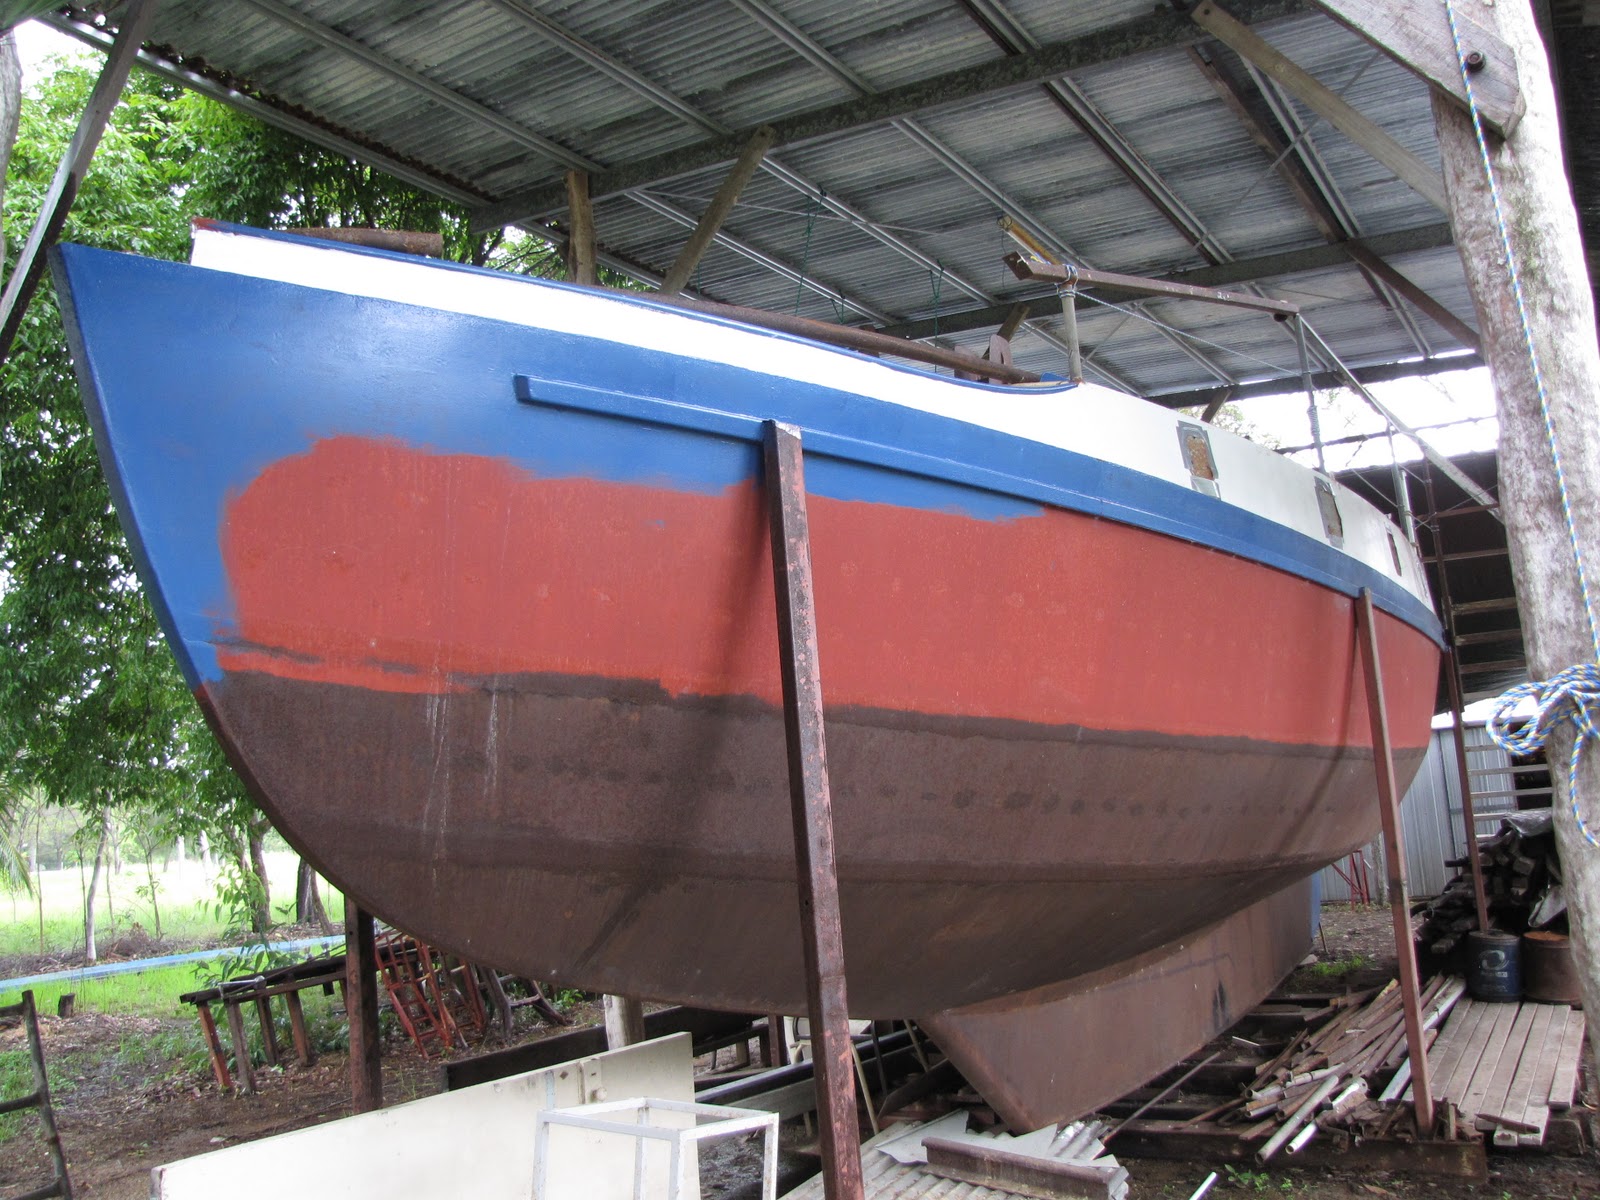 Wylo yard: Wylo2 gaff rigged yacht